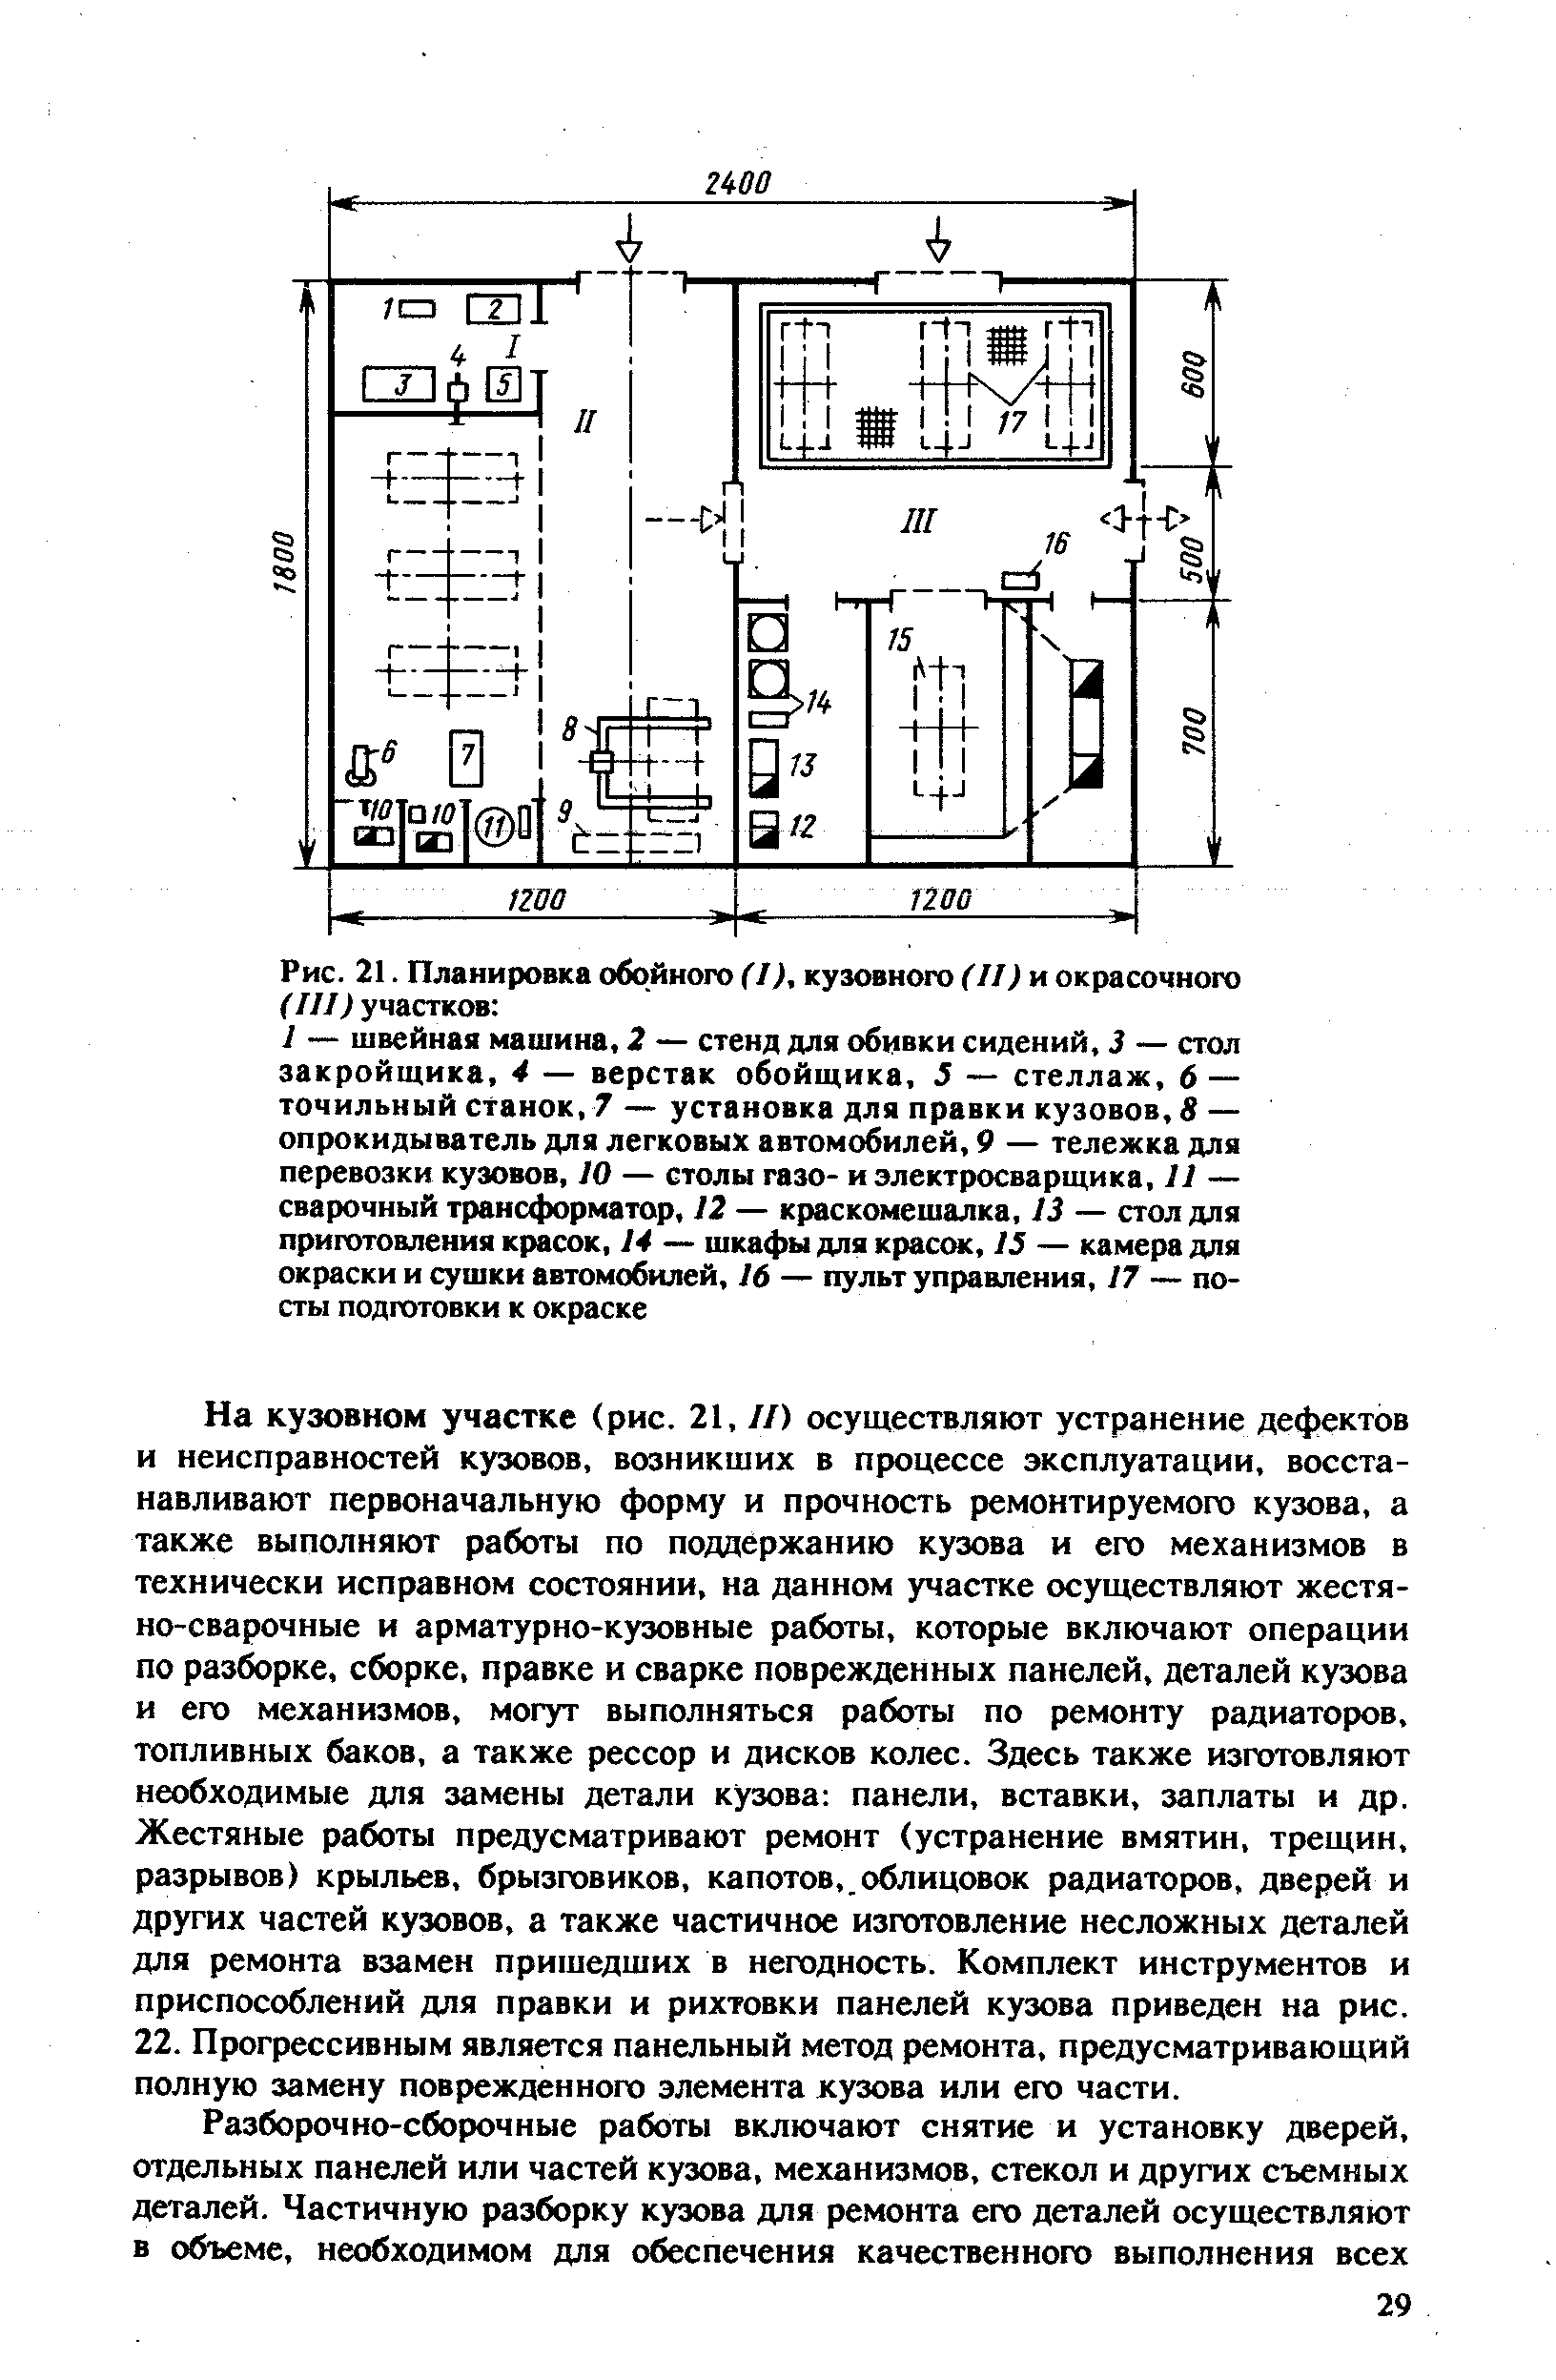 Рис. 21. Планировка обойного f/Л кузовного (II) и окрасочного (III) участков 
